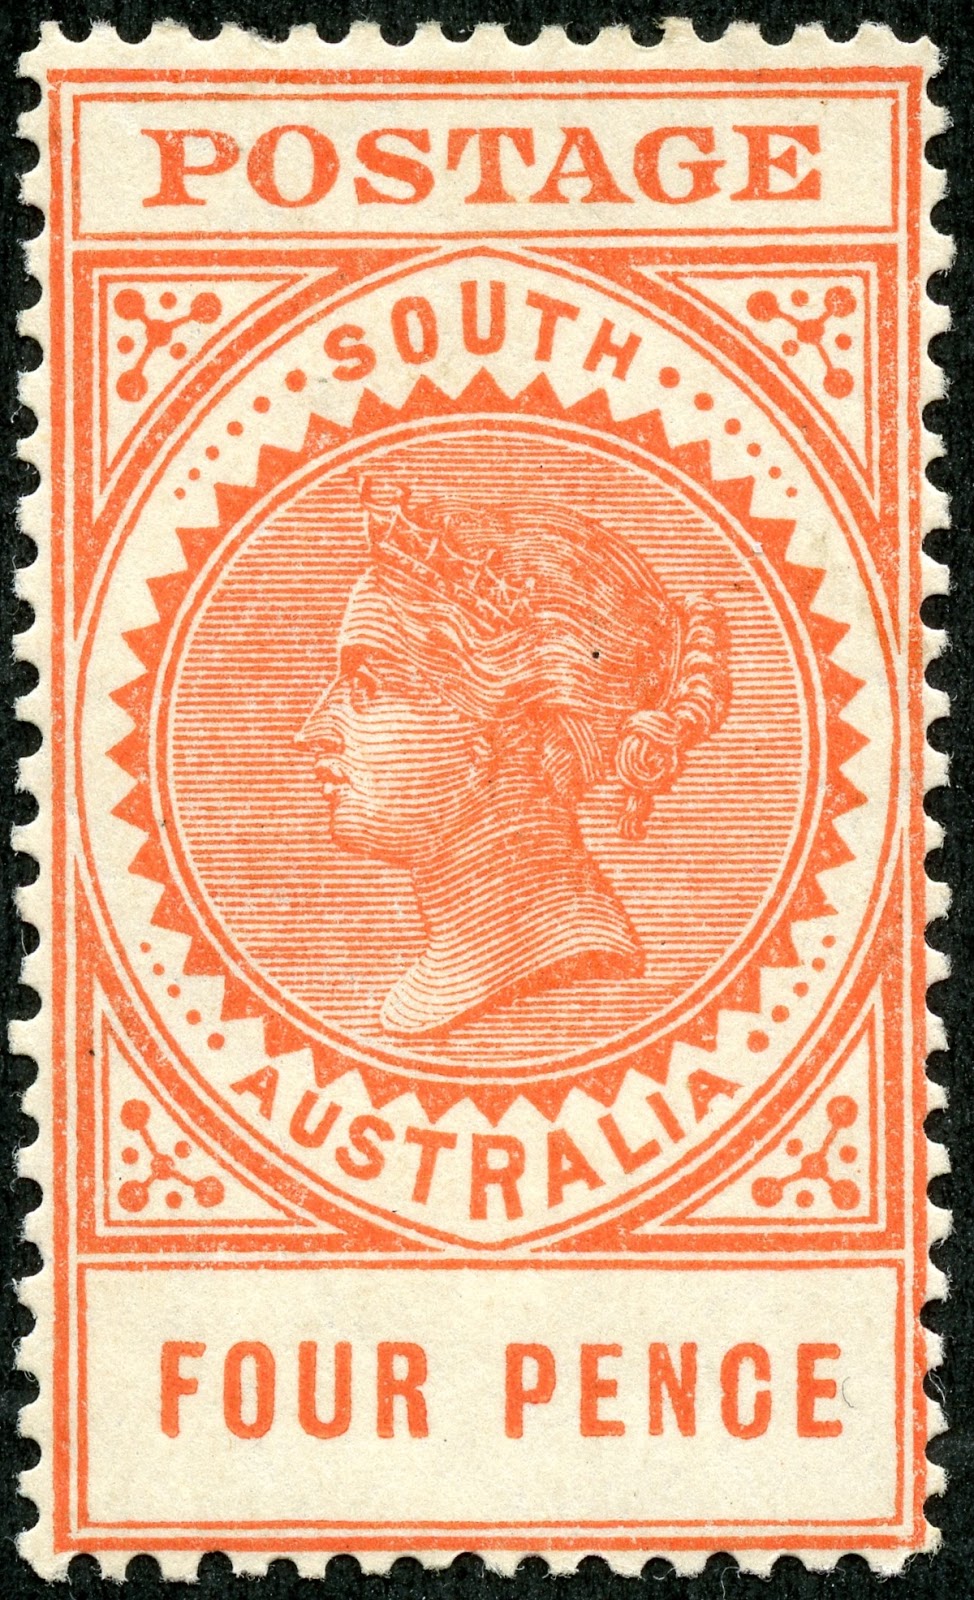 Австралия 1945 postage. Timbre. Великобритания - почтовые марки - 1867 - Queen Victoria. Каталог почтовых марок 1867 -1965.